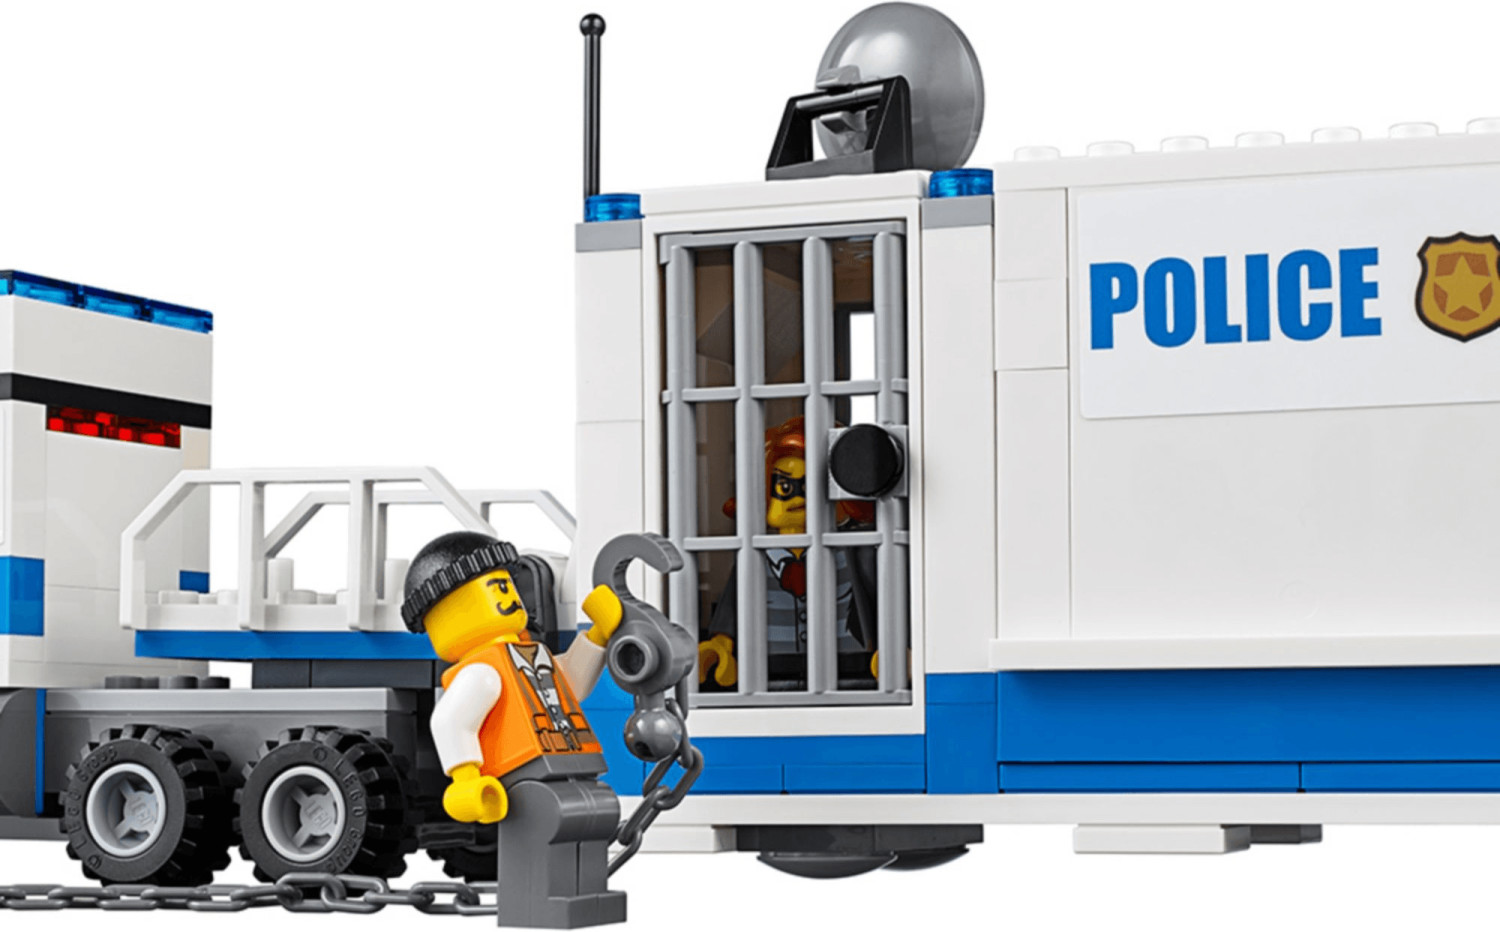 LEGO City - Centro di comando mobile (60139) a € 74,93 (oggi)